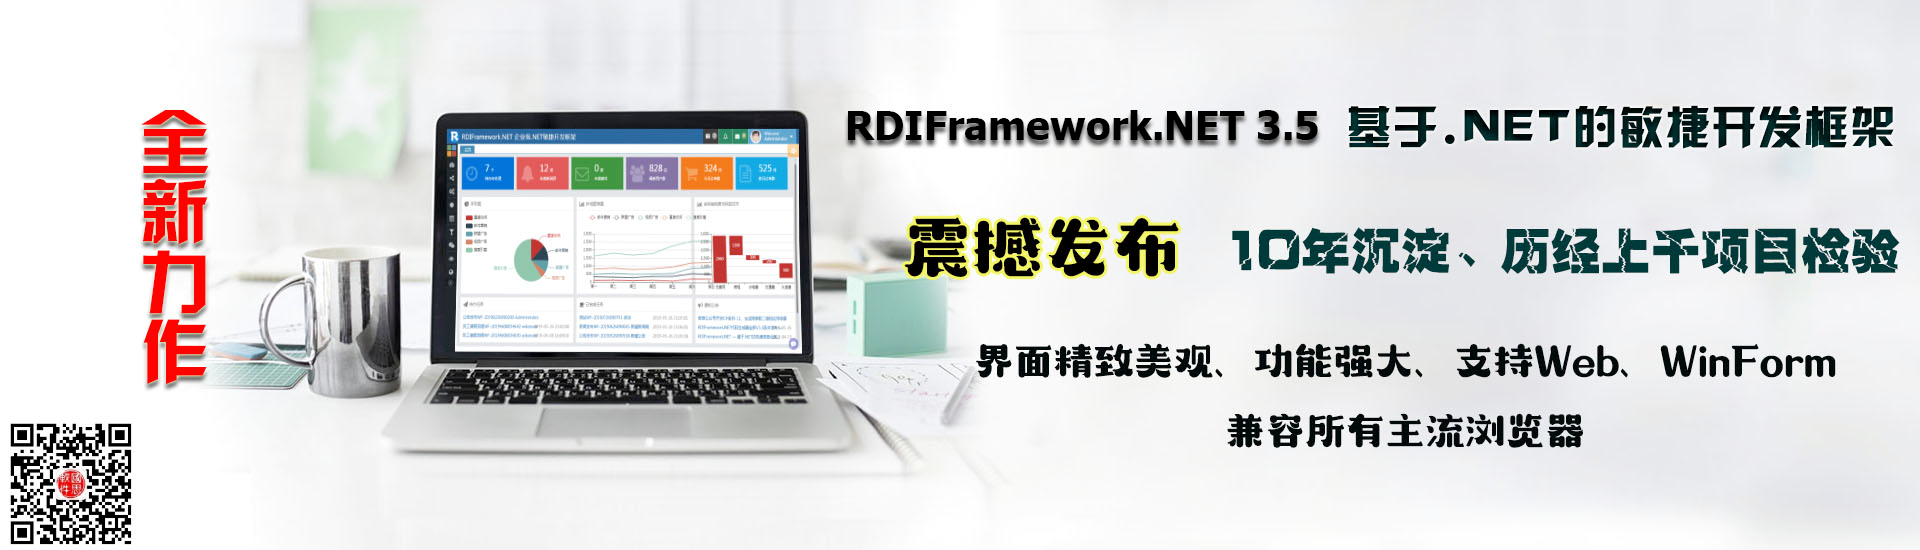 RDIFramework.NET ━ .NET敏捷开发框架全新发布-最好用的.NET开发框架 100%源码授权